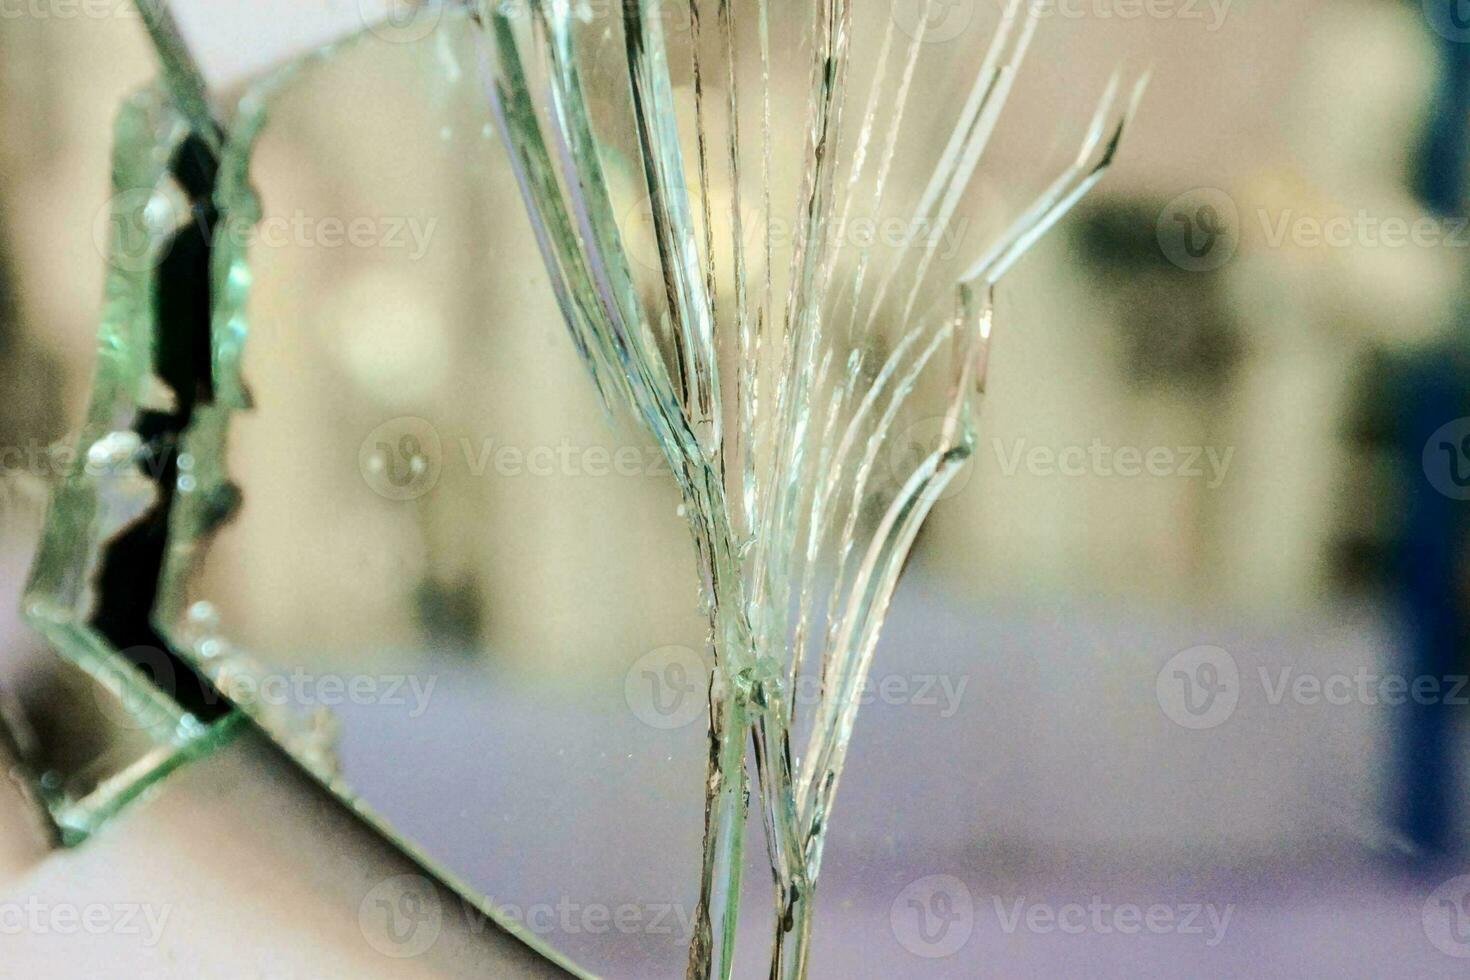 A broken glass photo